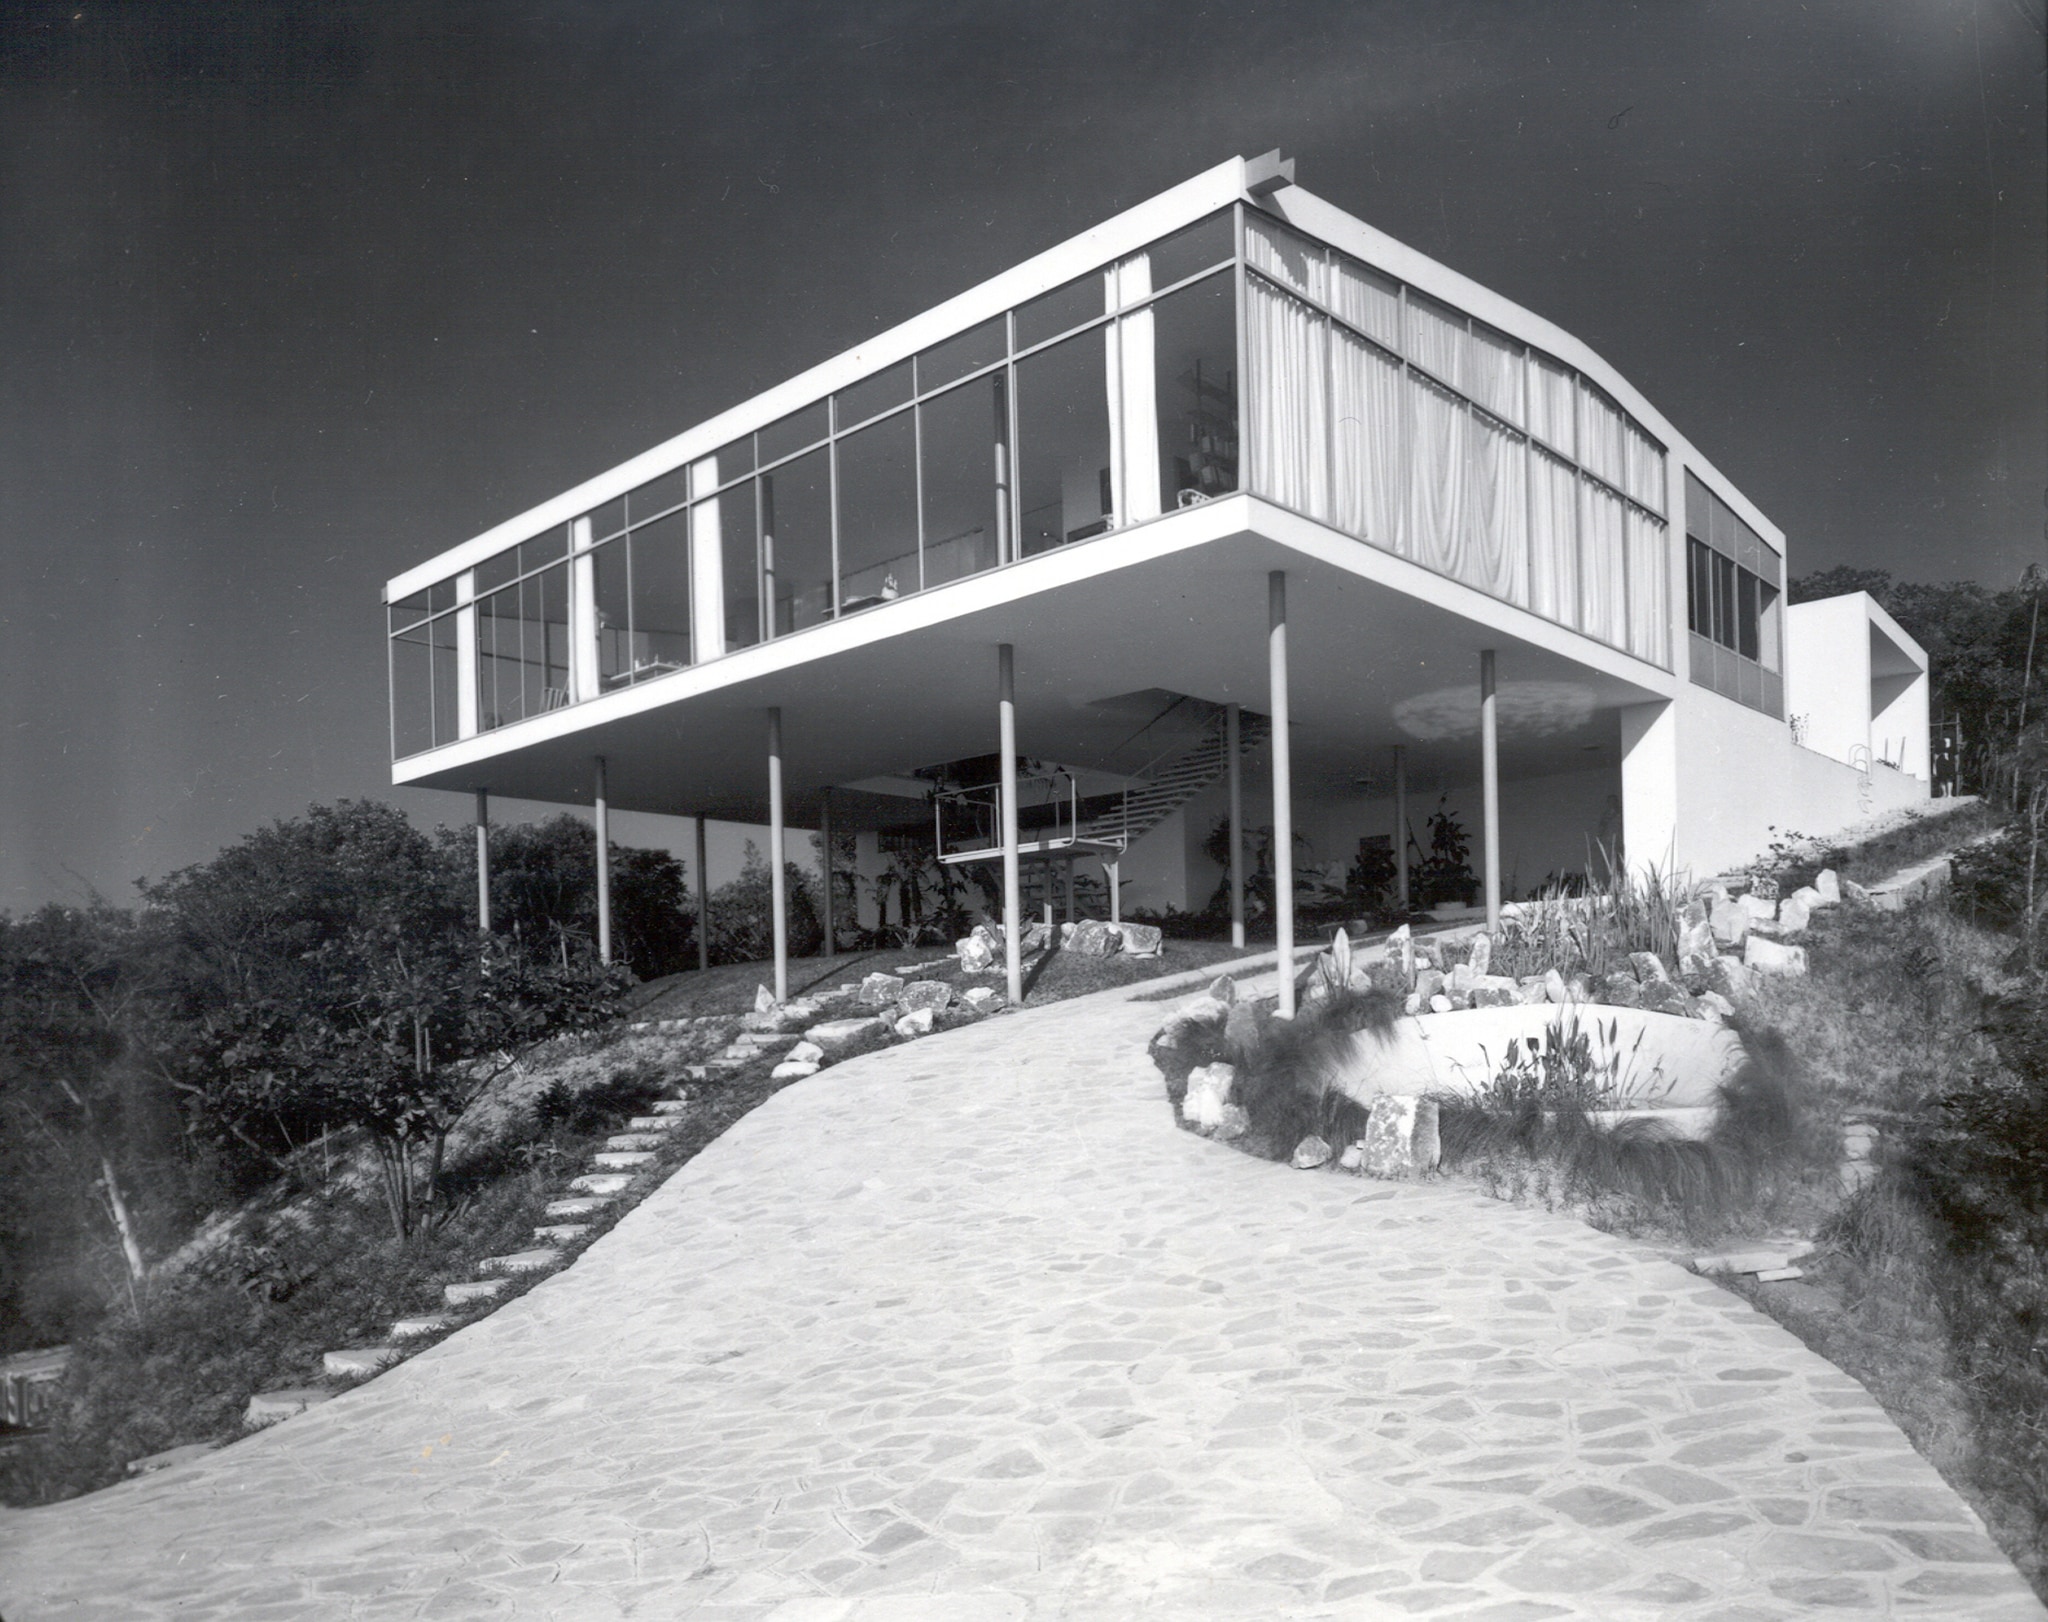 Lina Bo Bardi "Casa de Vidro" 1952. Foto Francisco Albuquerque. Courtesy Instituto Bardi